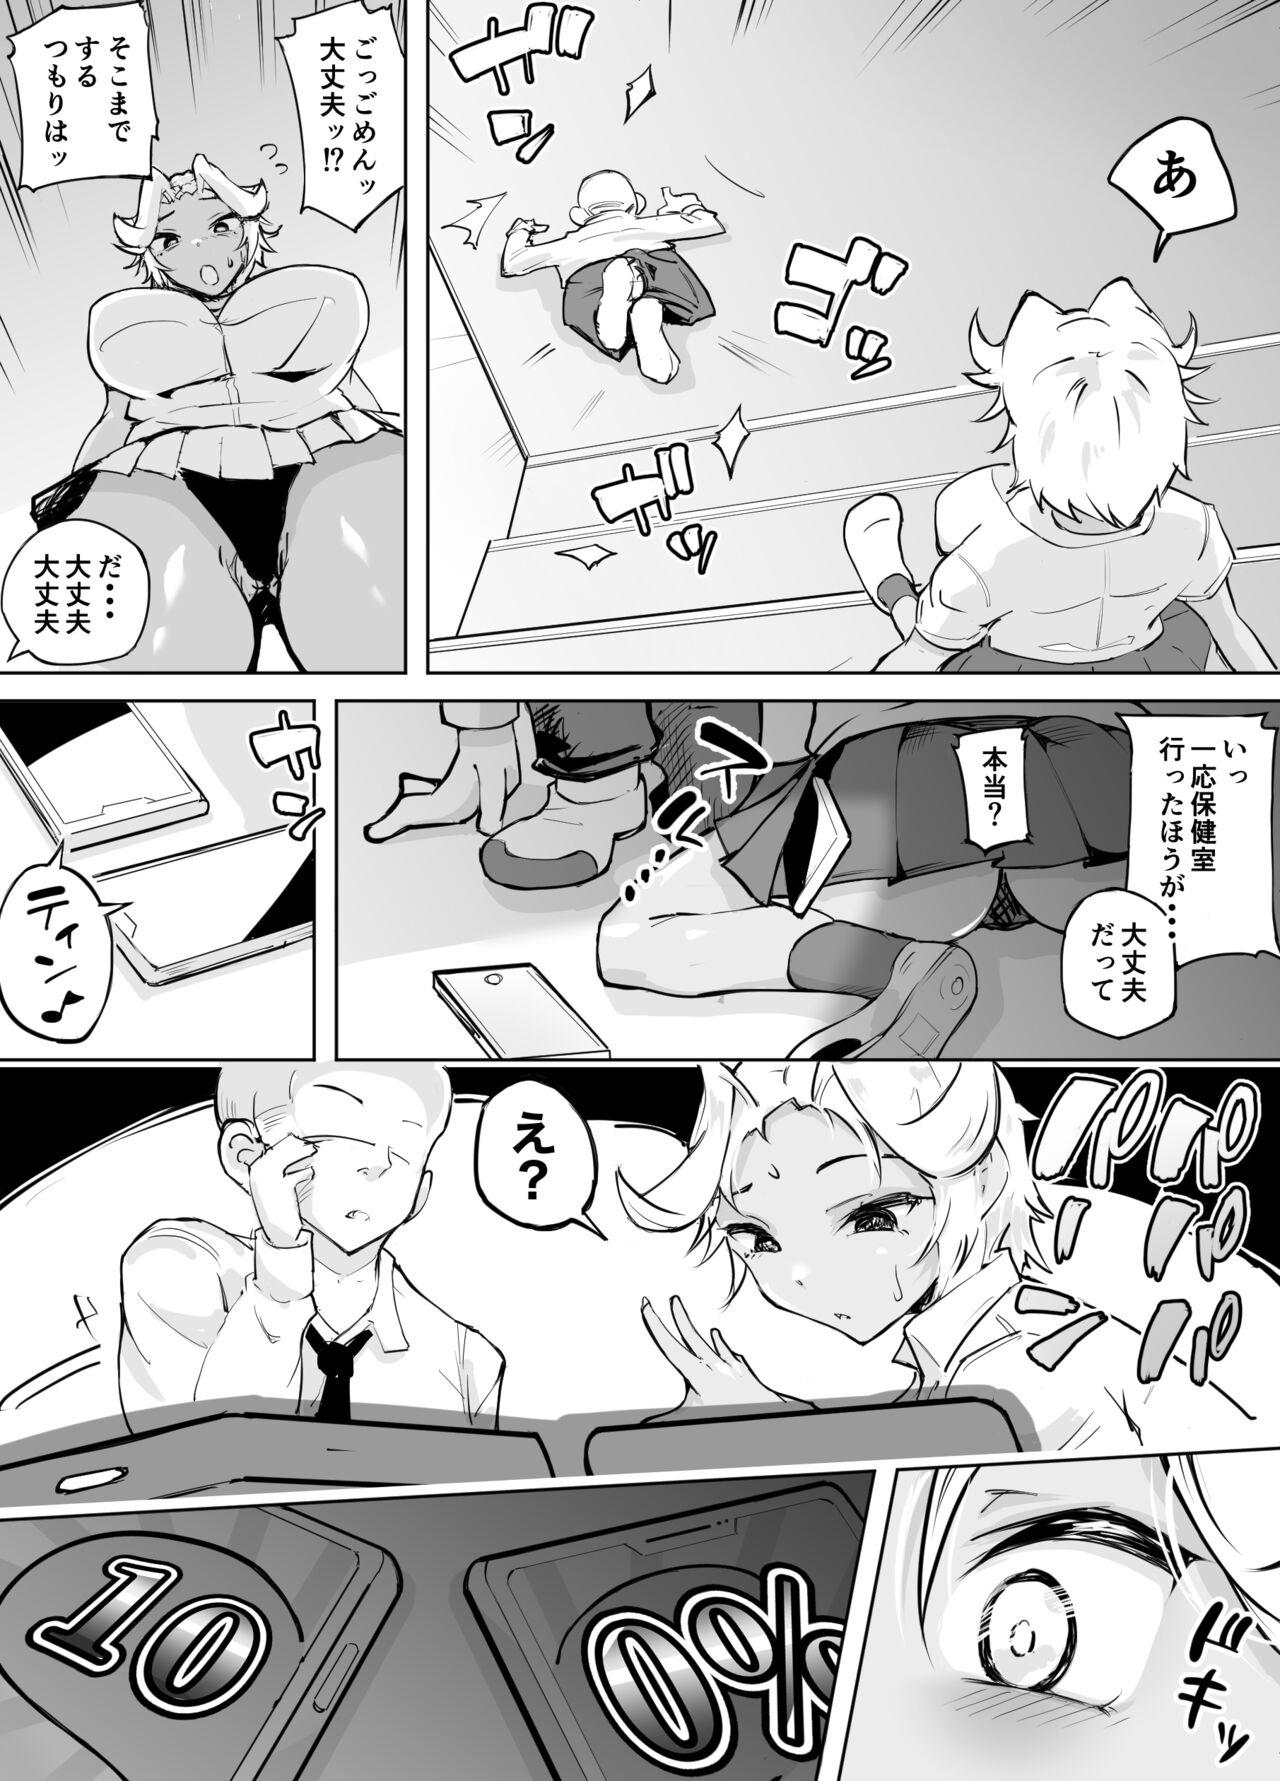 Urine Kare yori Ii Hito ga Aishou Appli de Mitsukatte... - Original Negro - Page 7